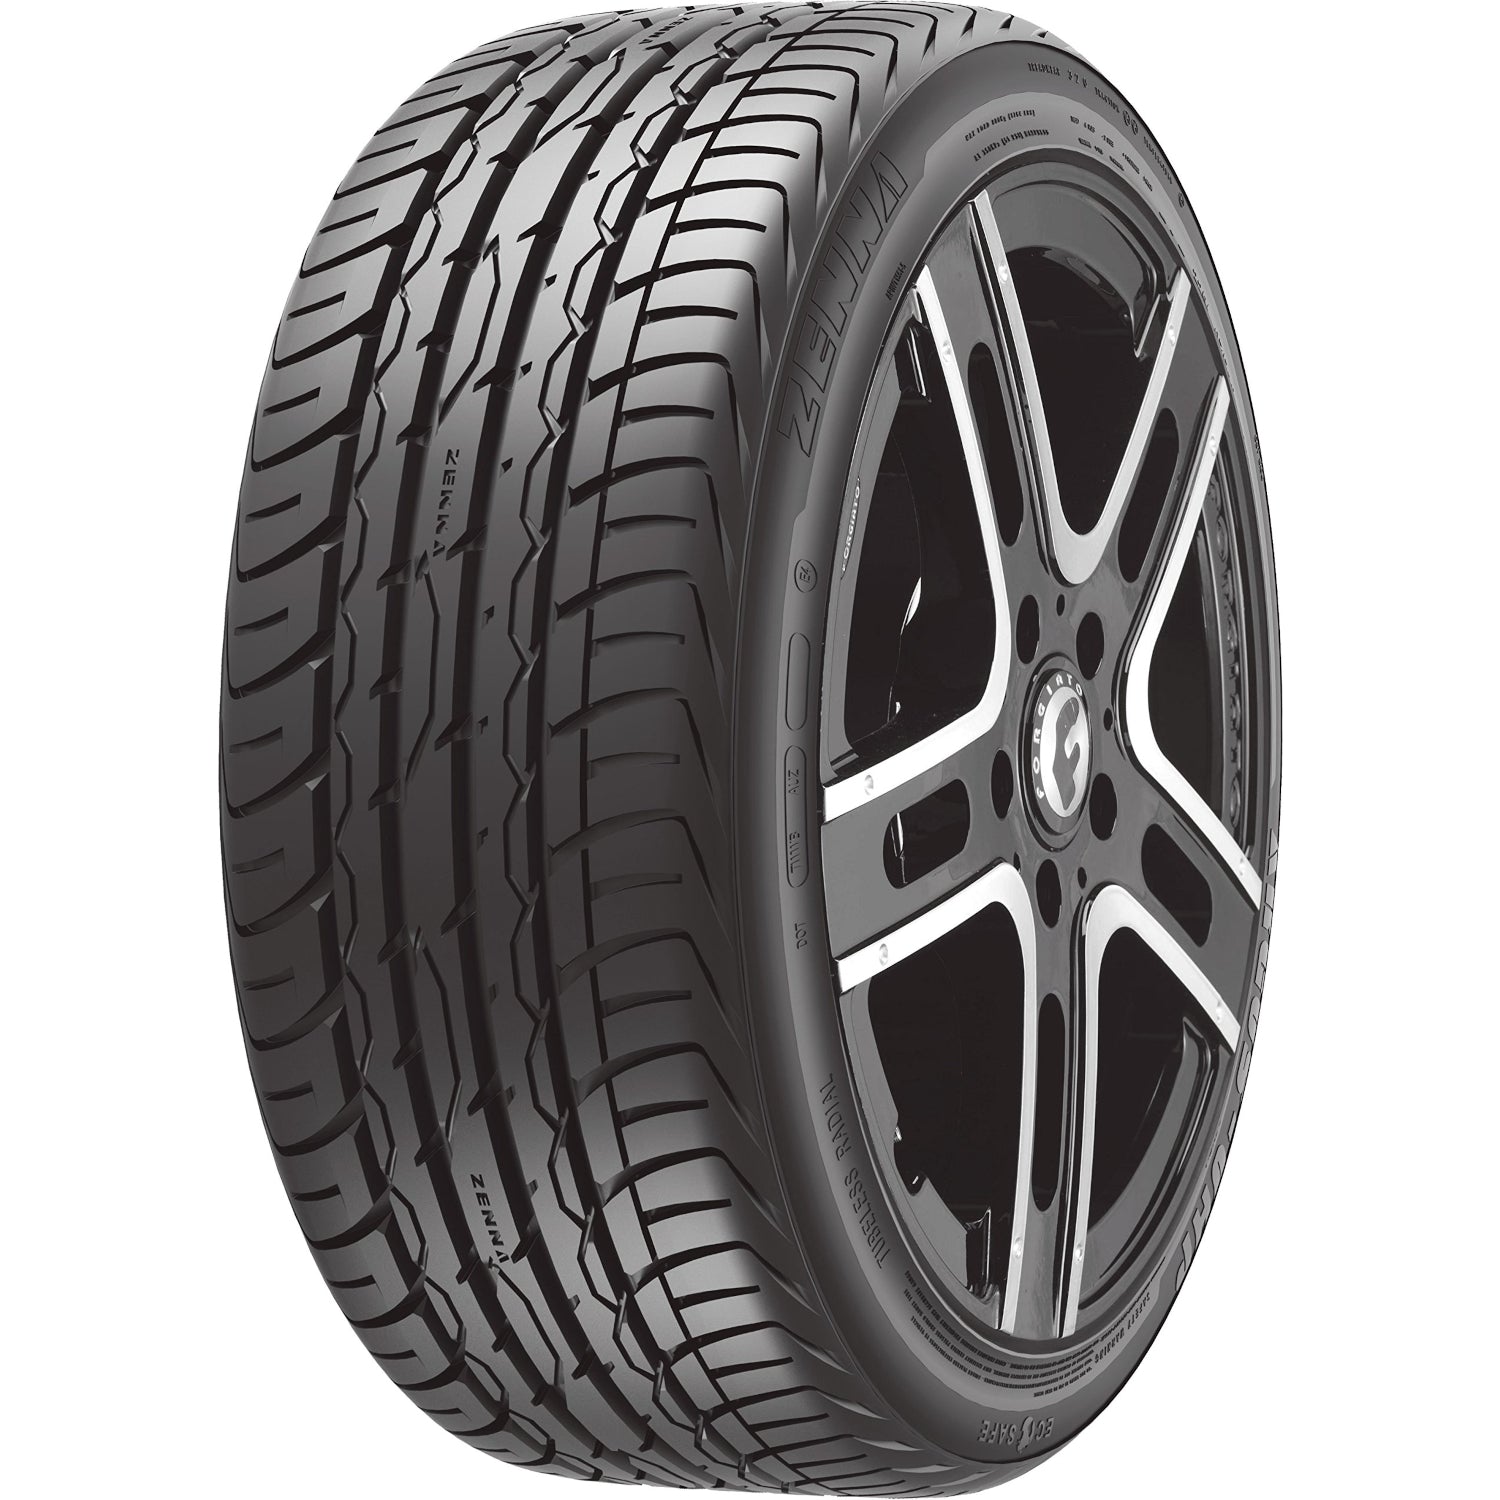 Zenna Argus UHP 285/30ZR20 (26.8x11.2R 20) Tires